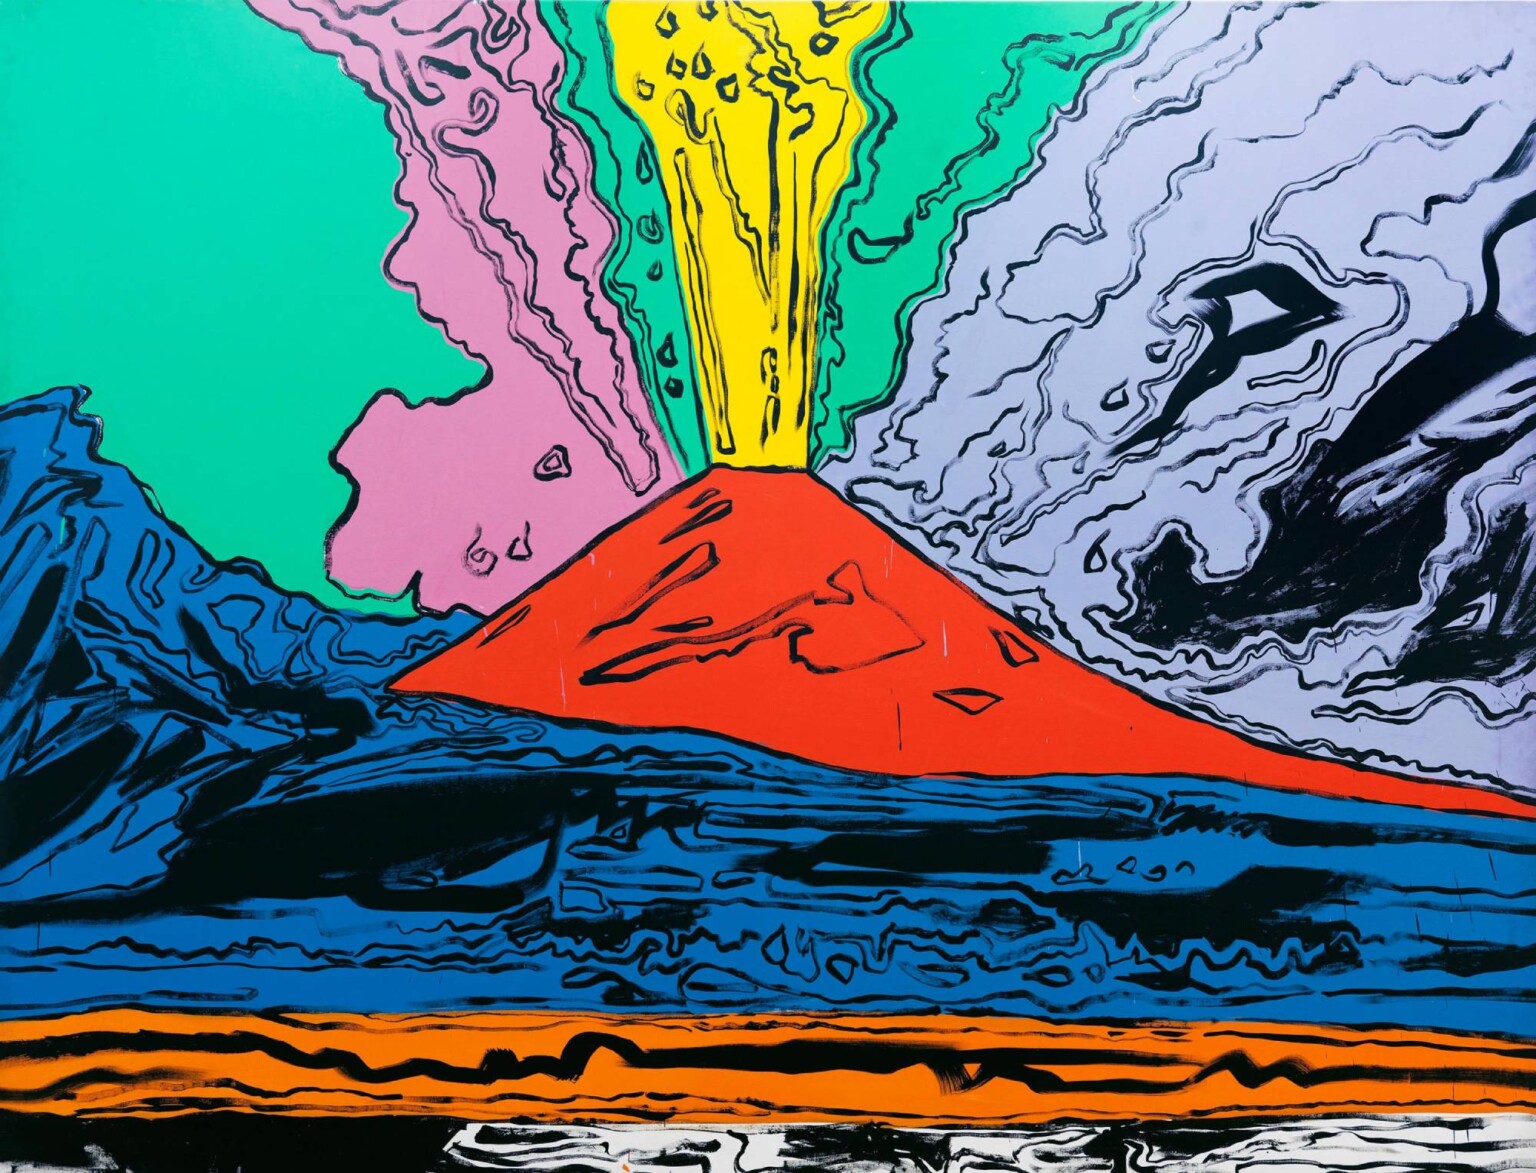 Andy Warhol, Vesuvius, 1985, serigrafia multicolor. acrilico su tela, Napoli, Museo e Real Bosco di Capodimonte, ph Luciano Romano